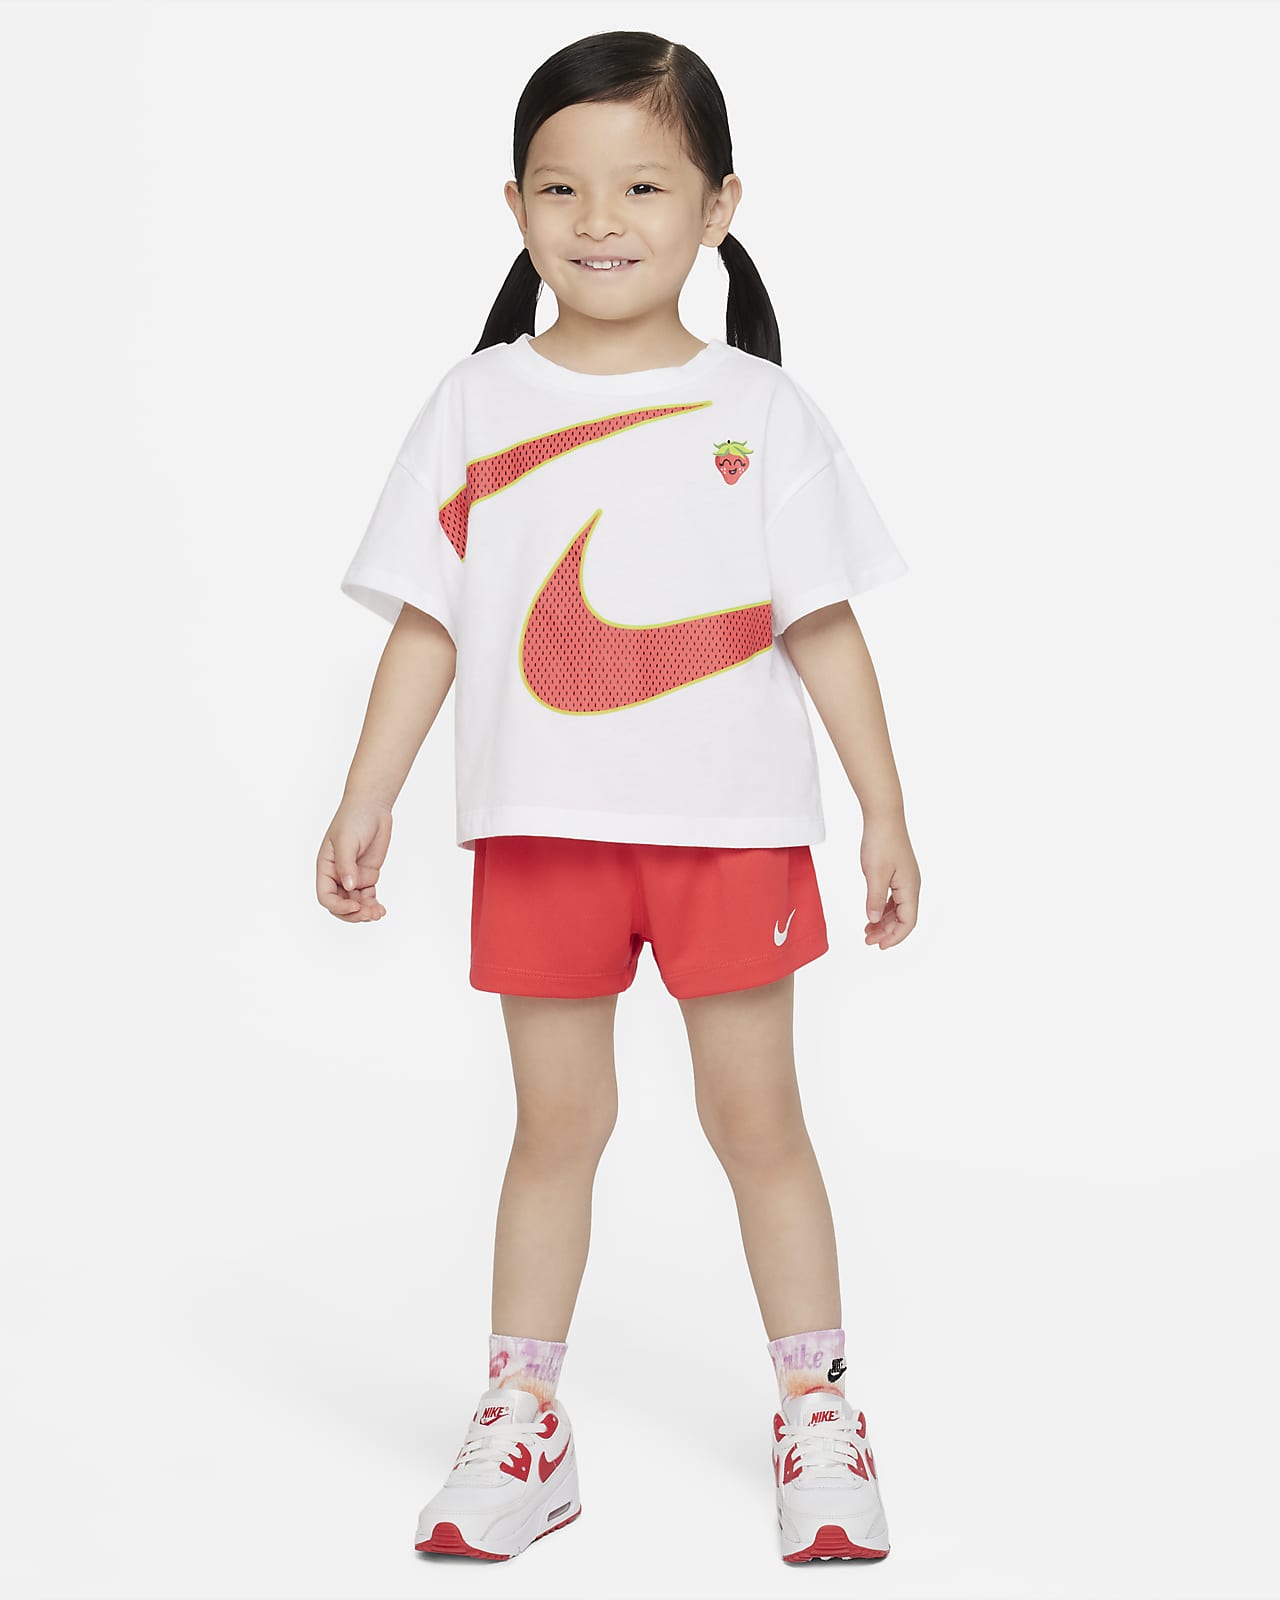 Nike Conjunt de samarreta i pantalons curts - Infant